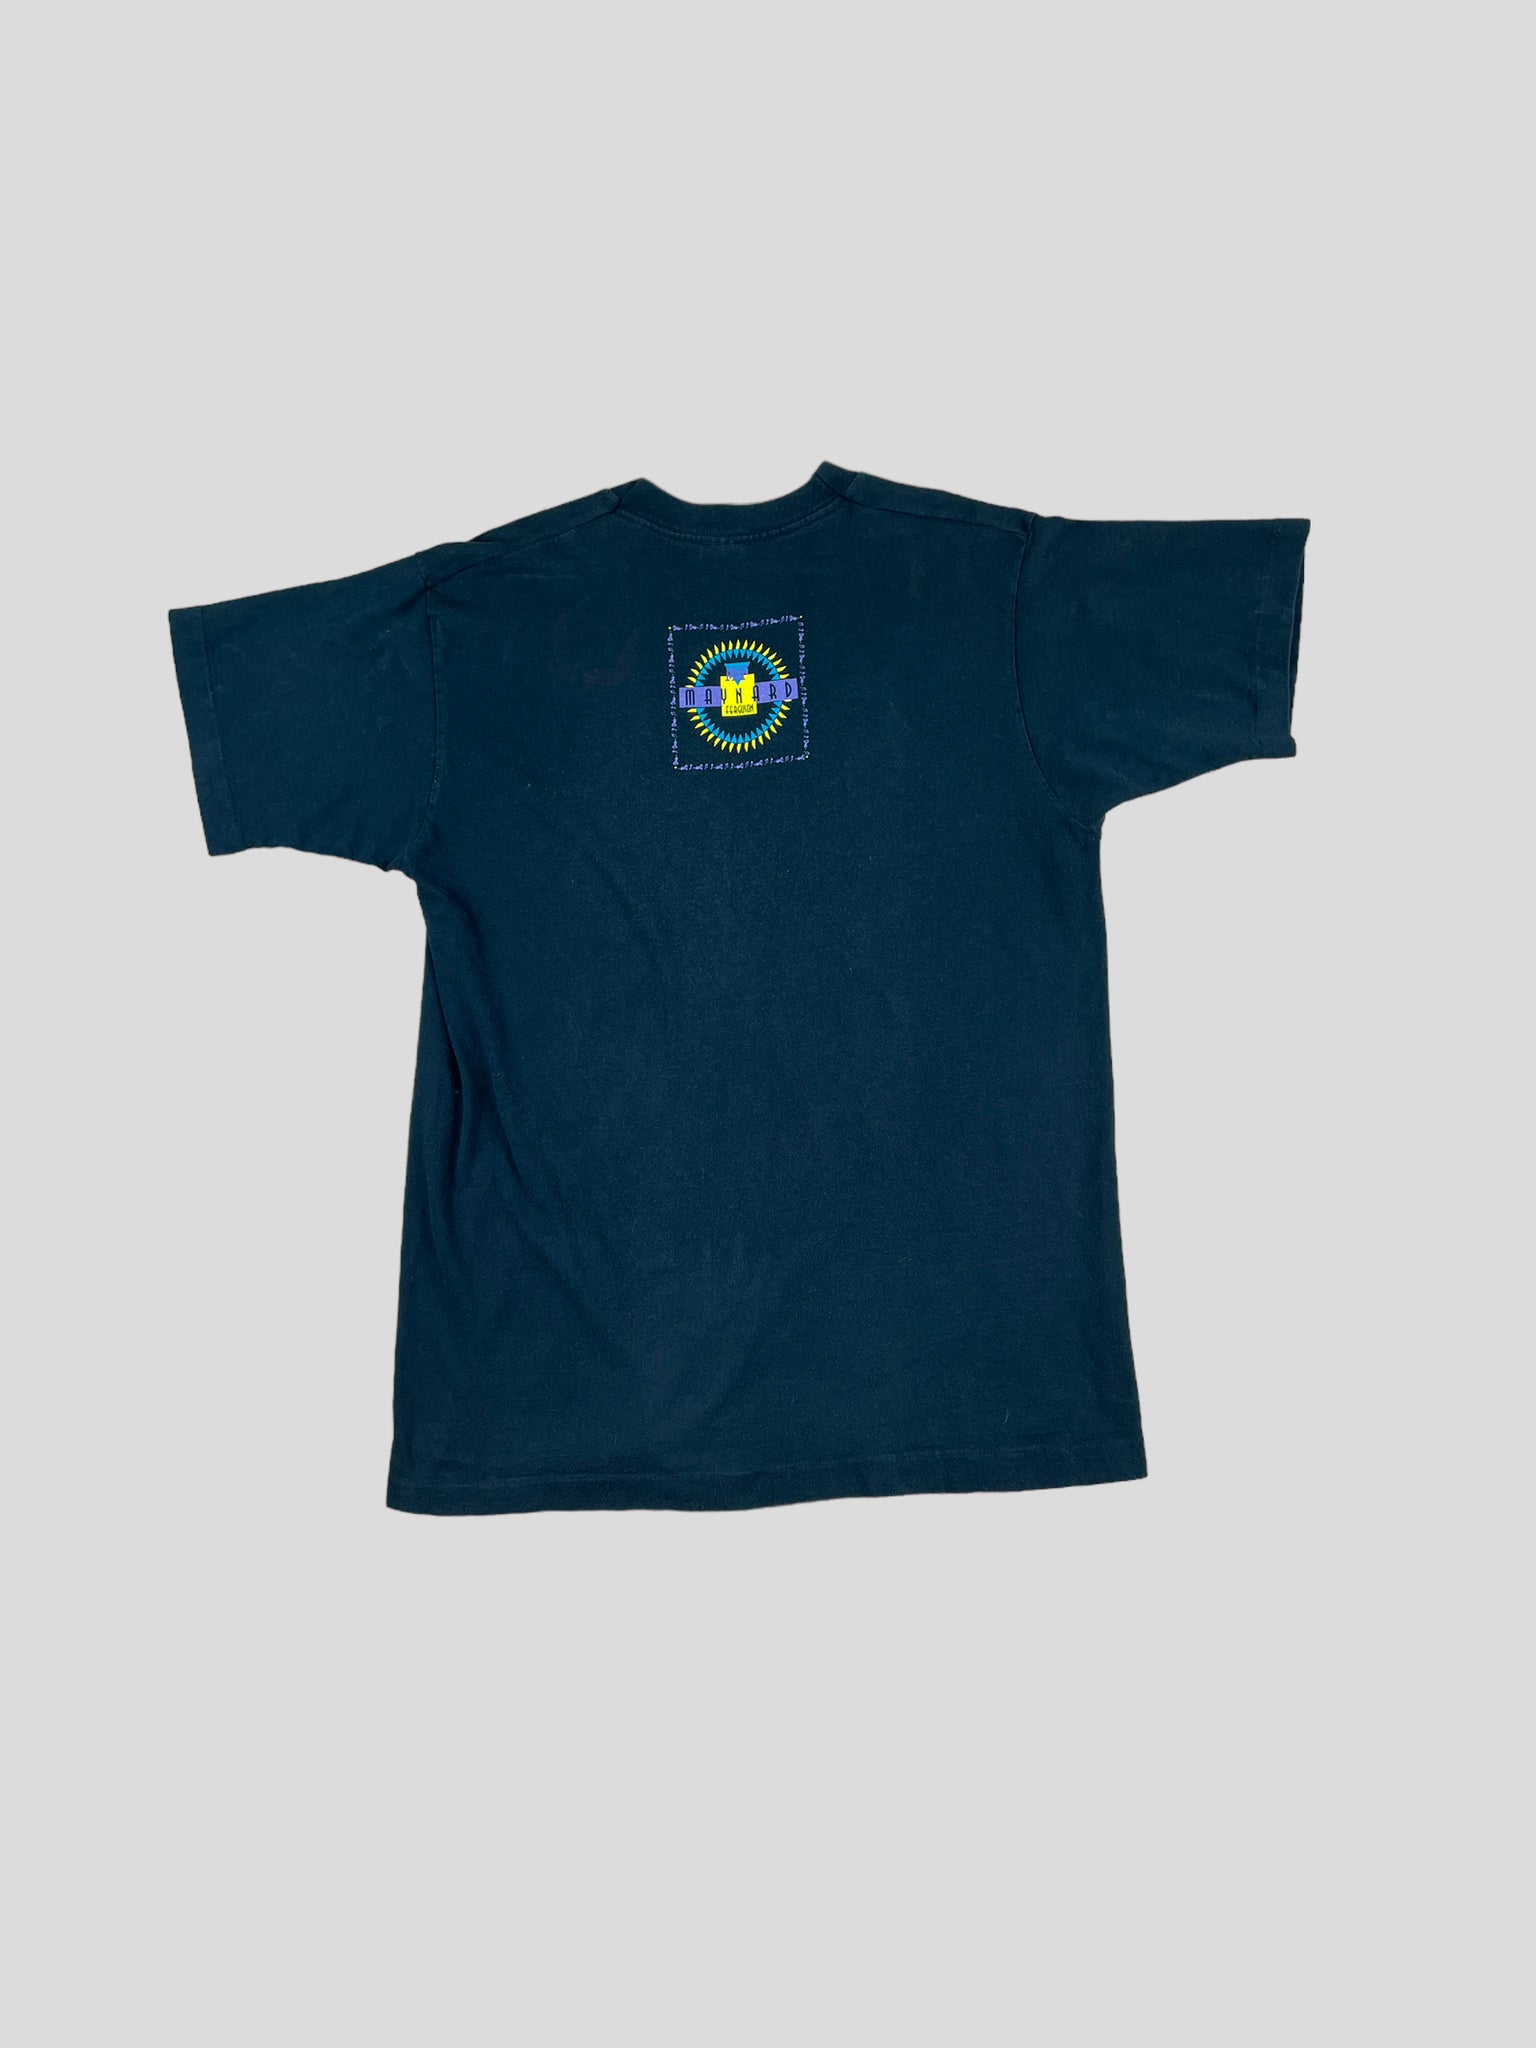 Maynard Ferguson T-shirt